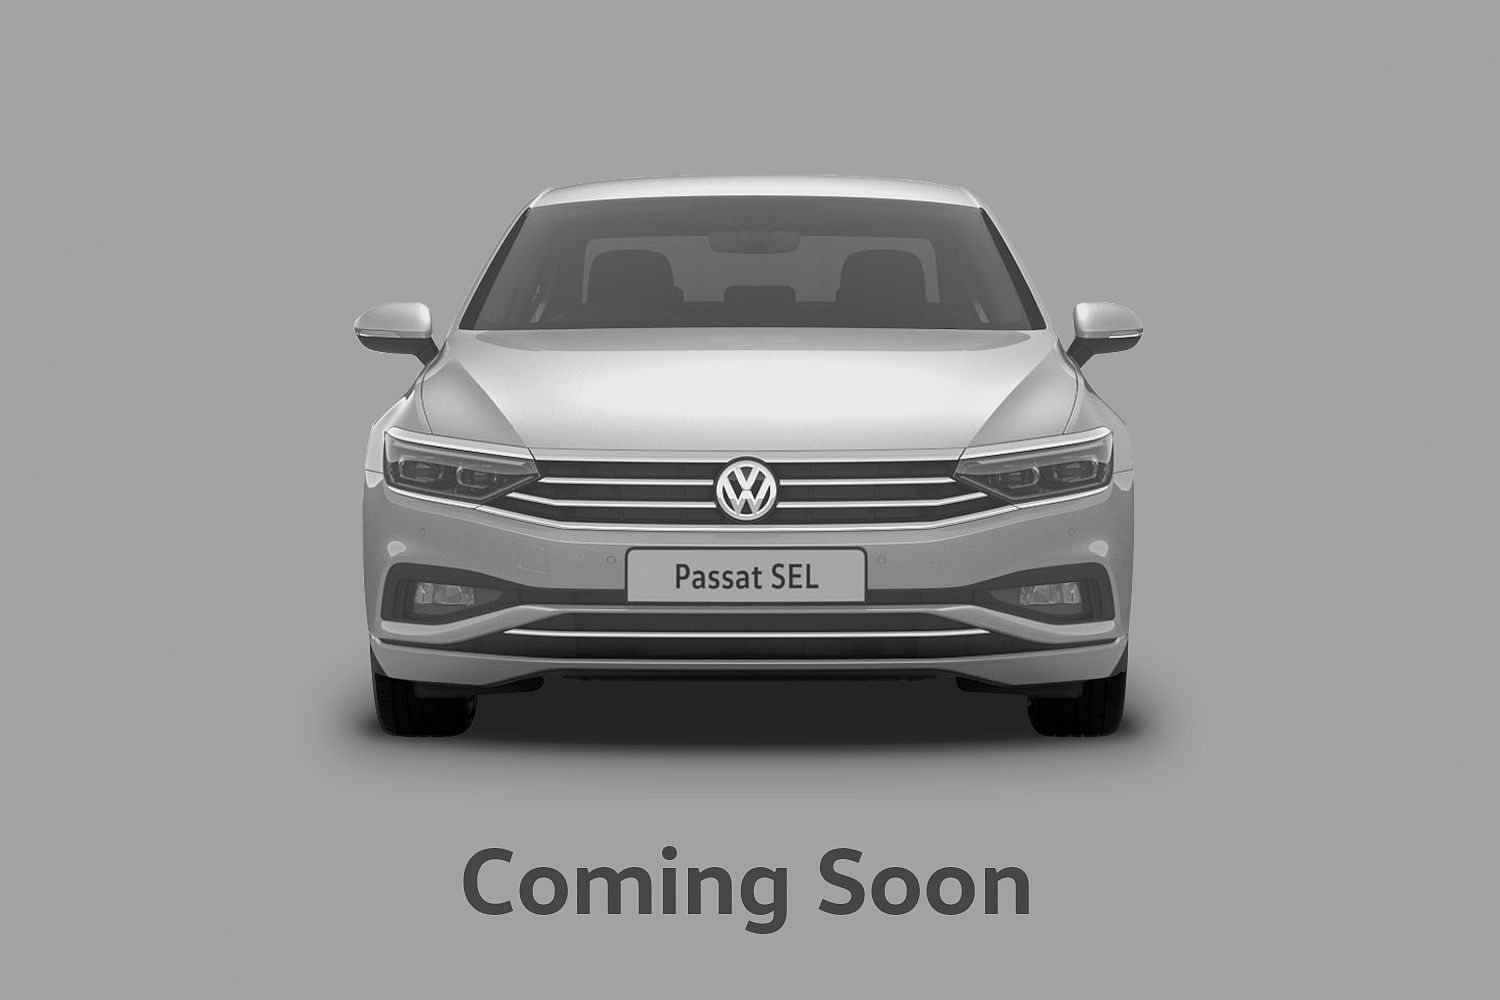 Volkswagen Passat R-Line 2.0TSi 190ps DSG *19' Pretoria Alloys, Alloy Spare, Rear View Camera*